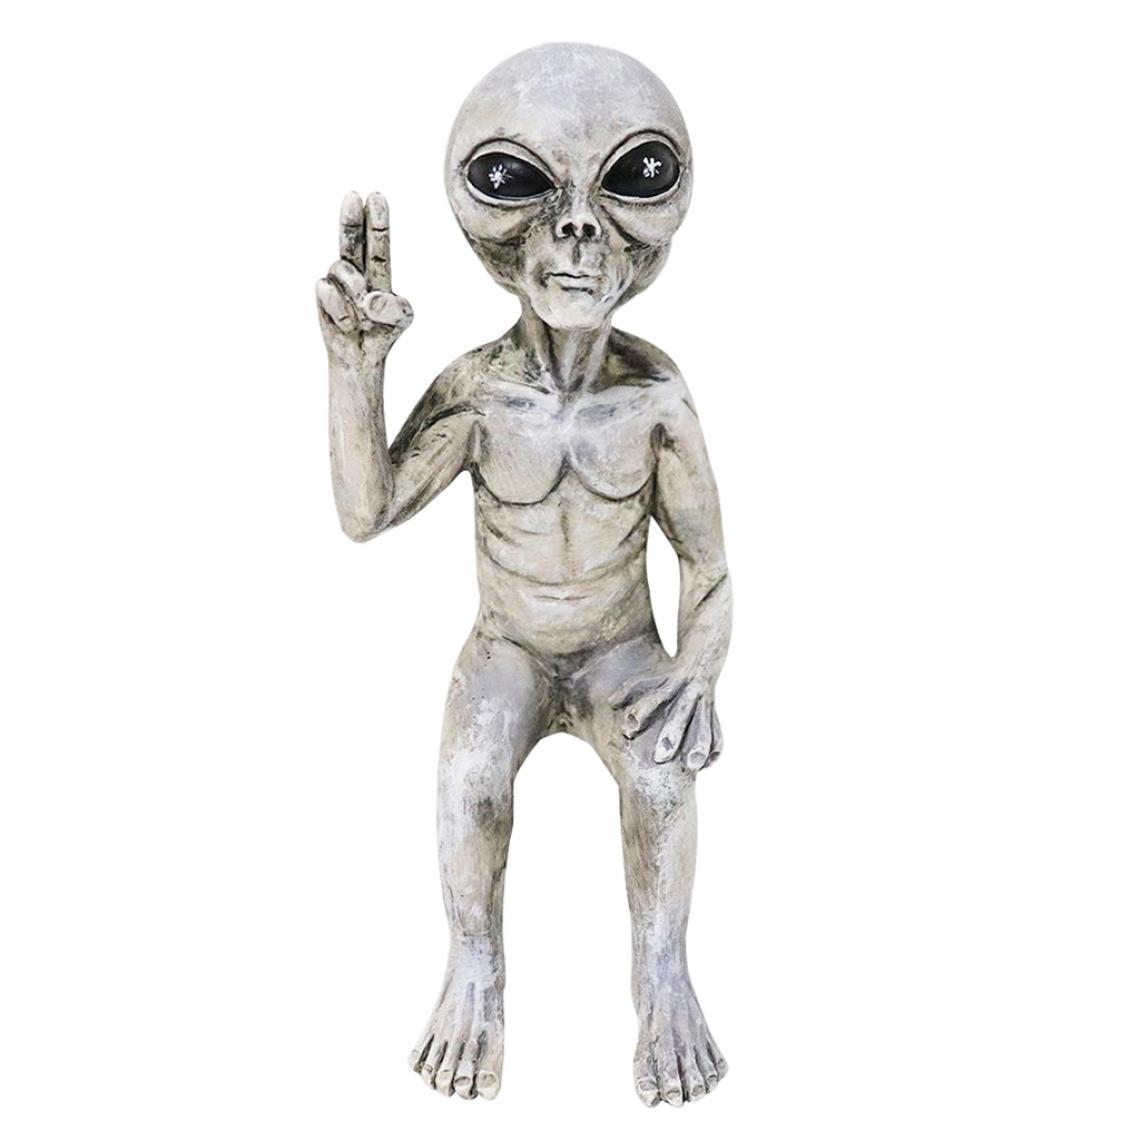 marque generique - Statue Extraterrestre Martiens De L'espace Extra-atmosphérique Figurine Sculpture Ornements Artisanat Femelle - Petite déco d'exterieur